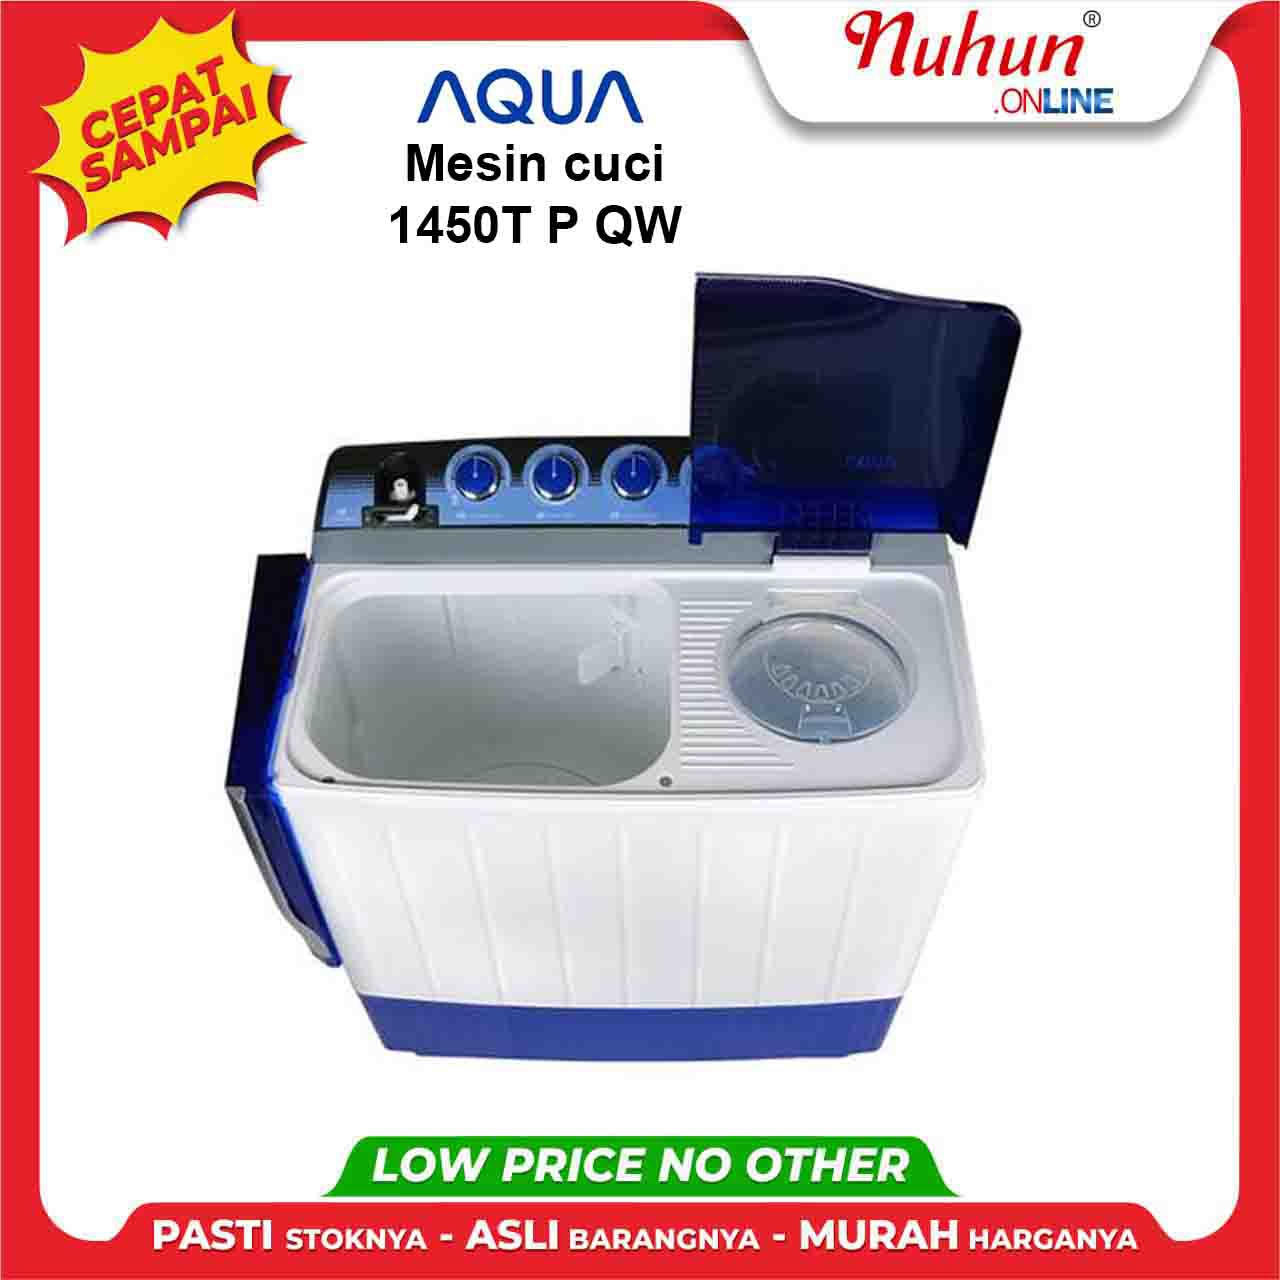 Aqua 1450T P QW